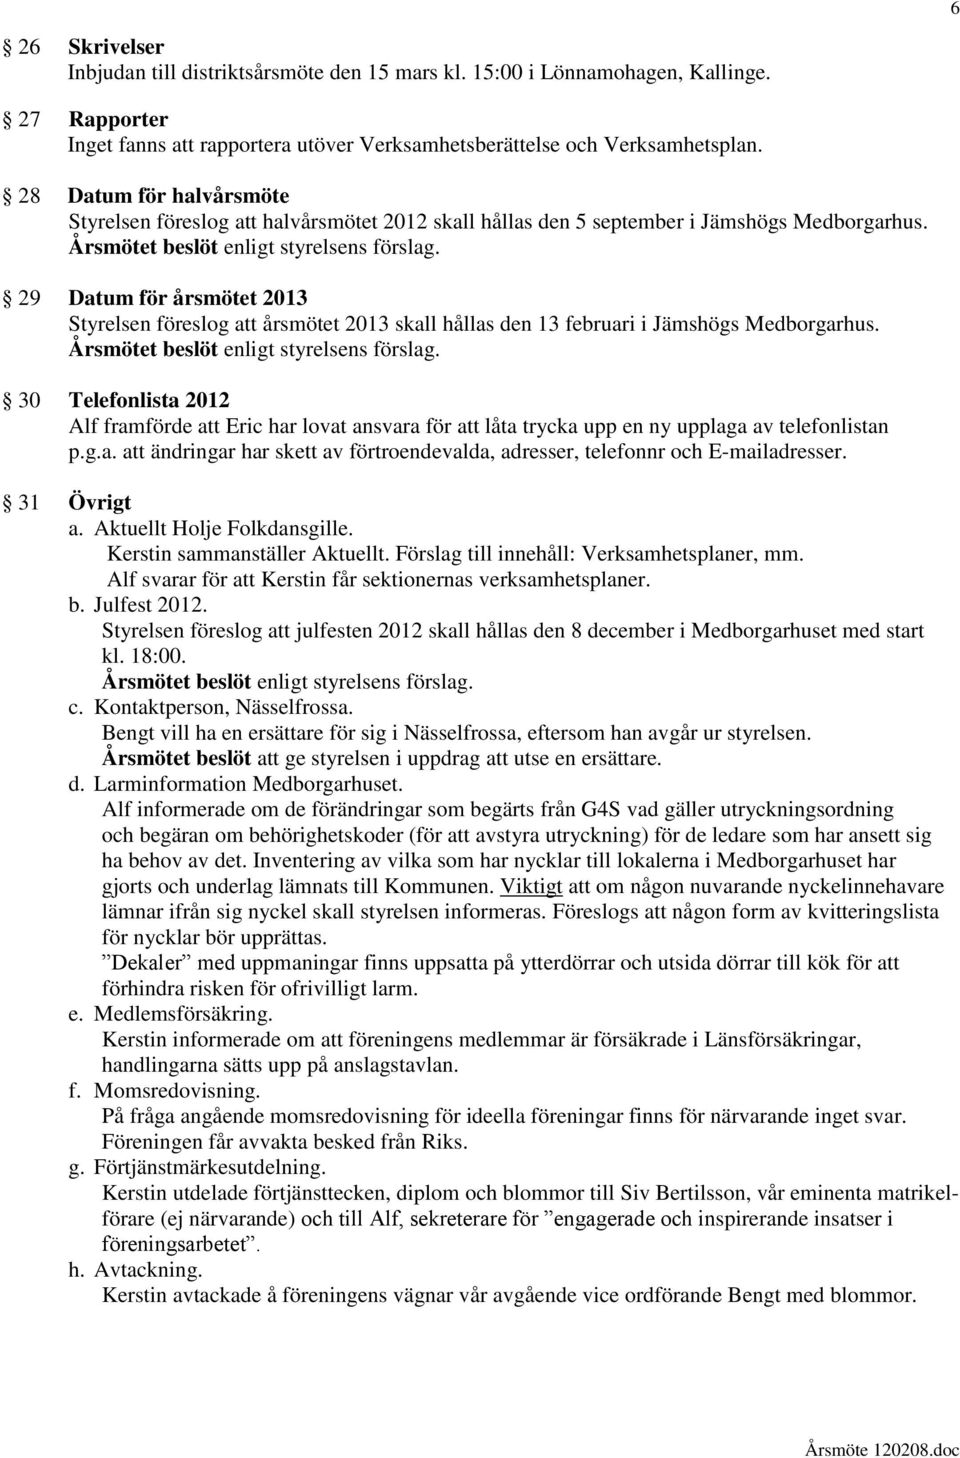 29 Datum för årsmötet 2013 Styrelsen föreslog att årsmötet 2013 skall hållas den 13 februari i Jämshögs Medborgarhus.